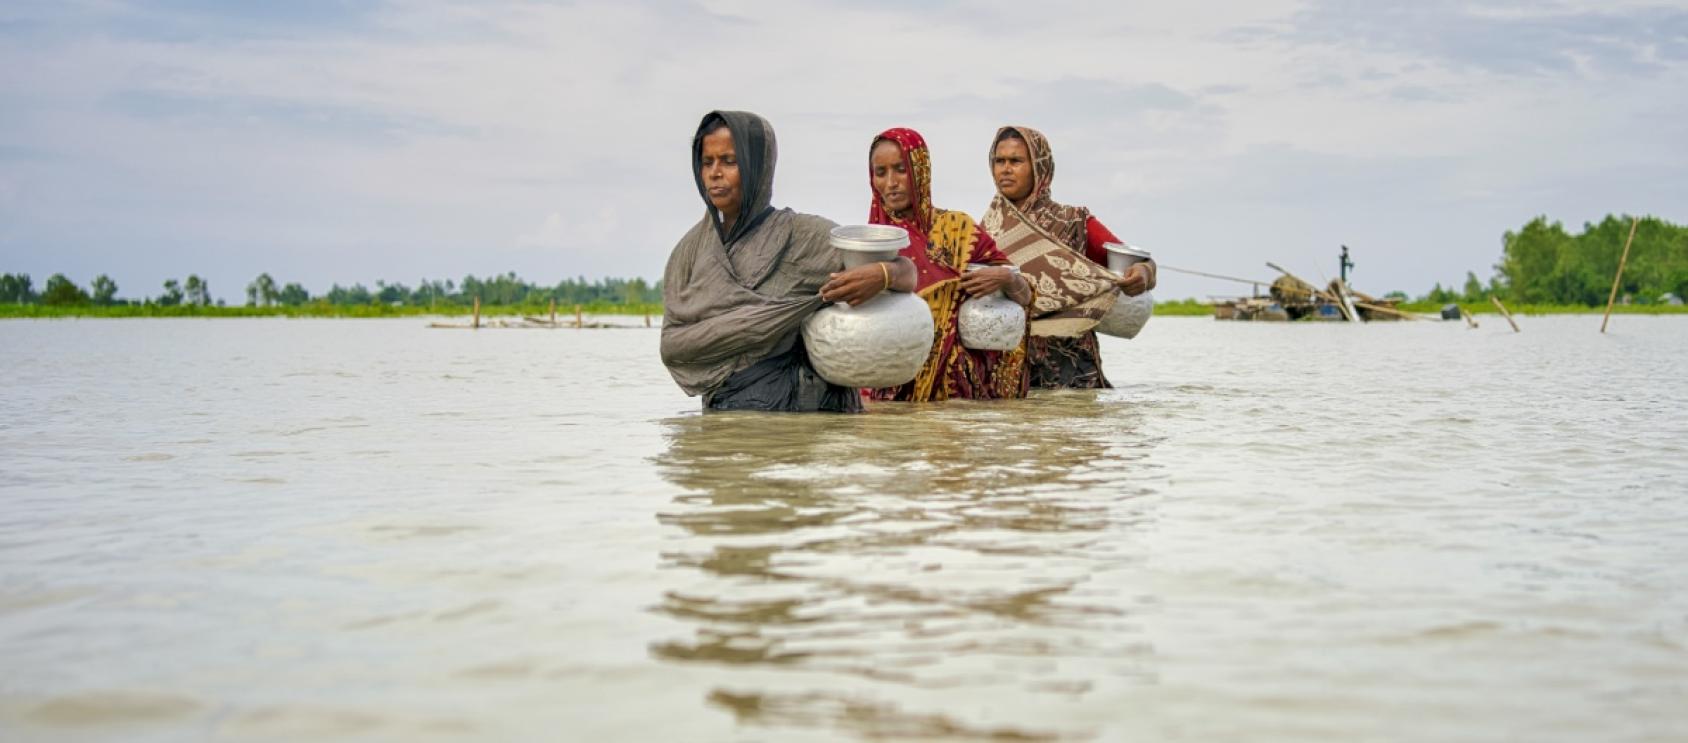 ثلاث نساء يسرن في حقل غمرته المياه ويحملن أباريق.